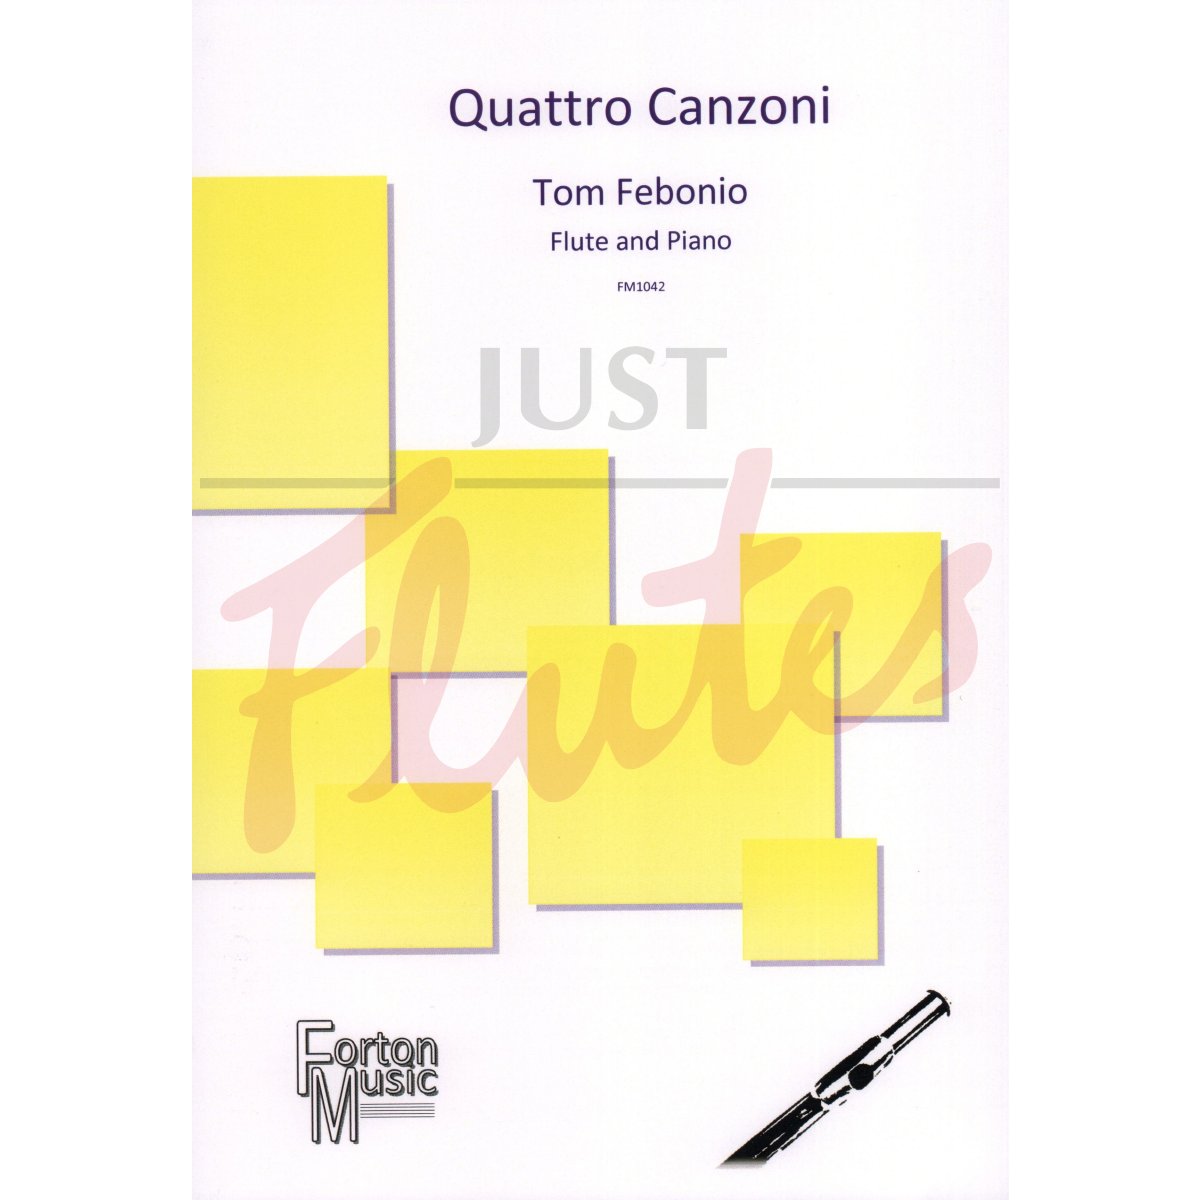 Quattro Canzoni for Flute and Piano